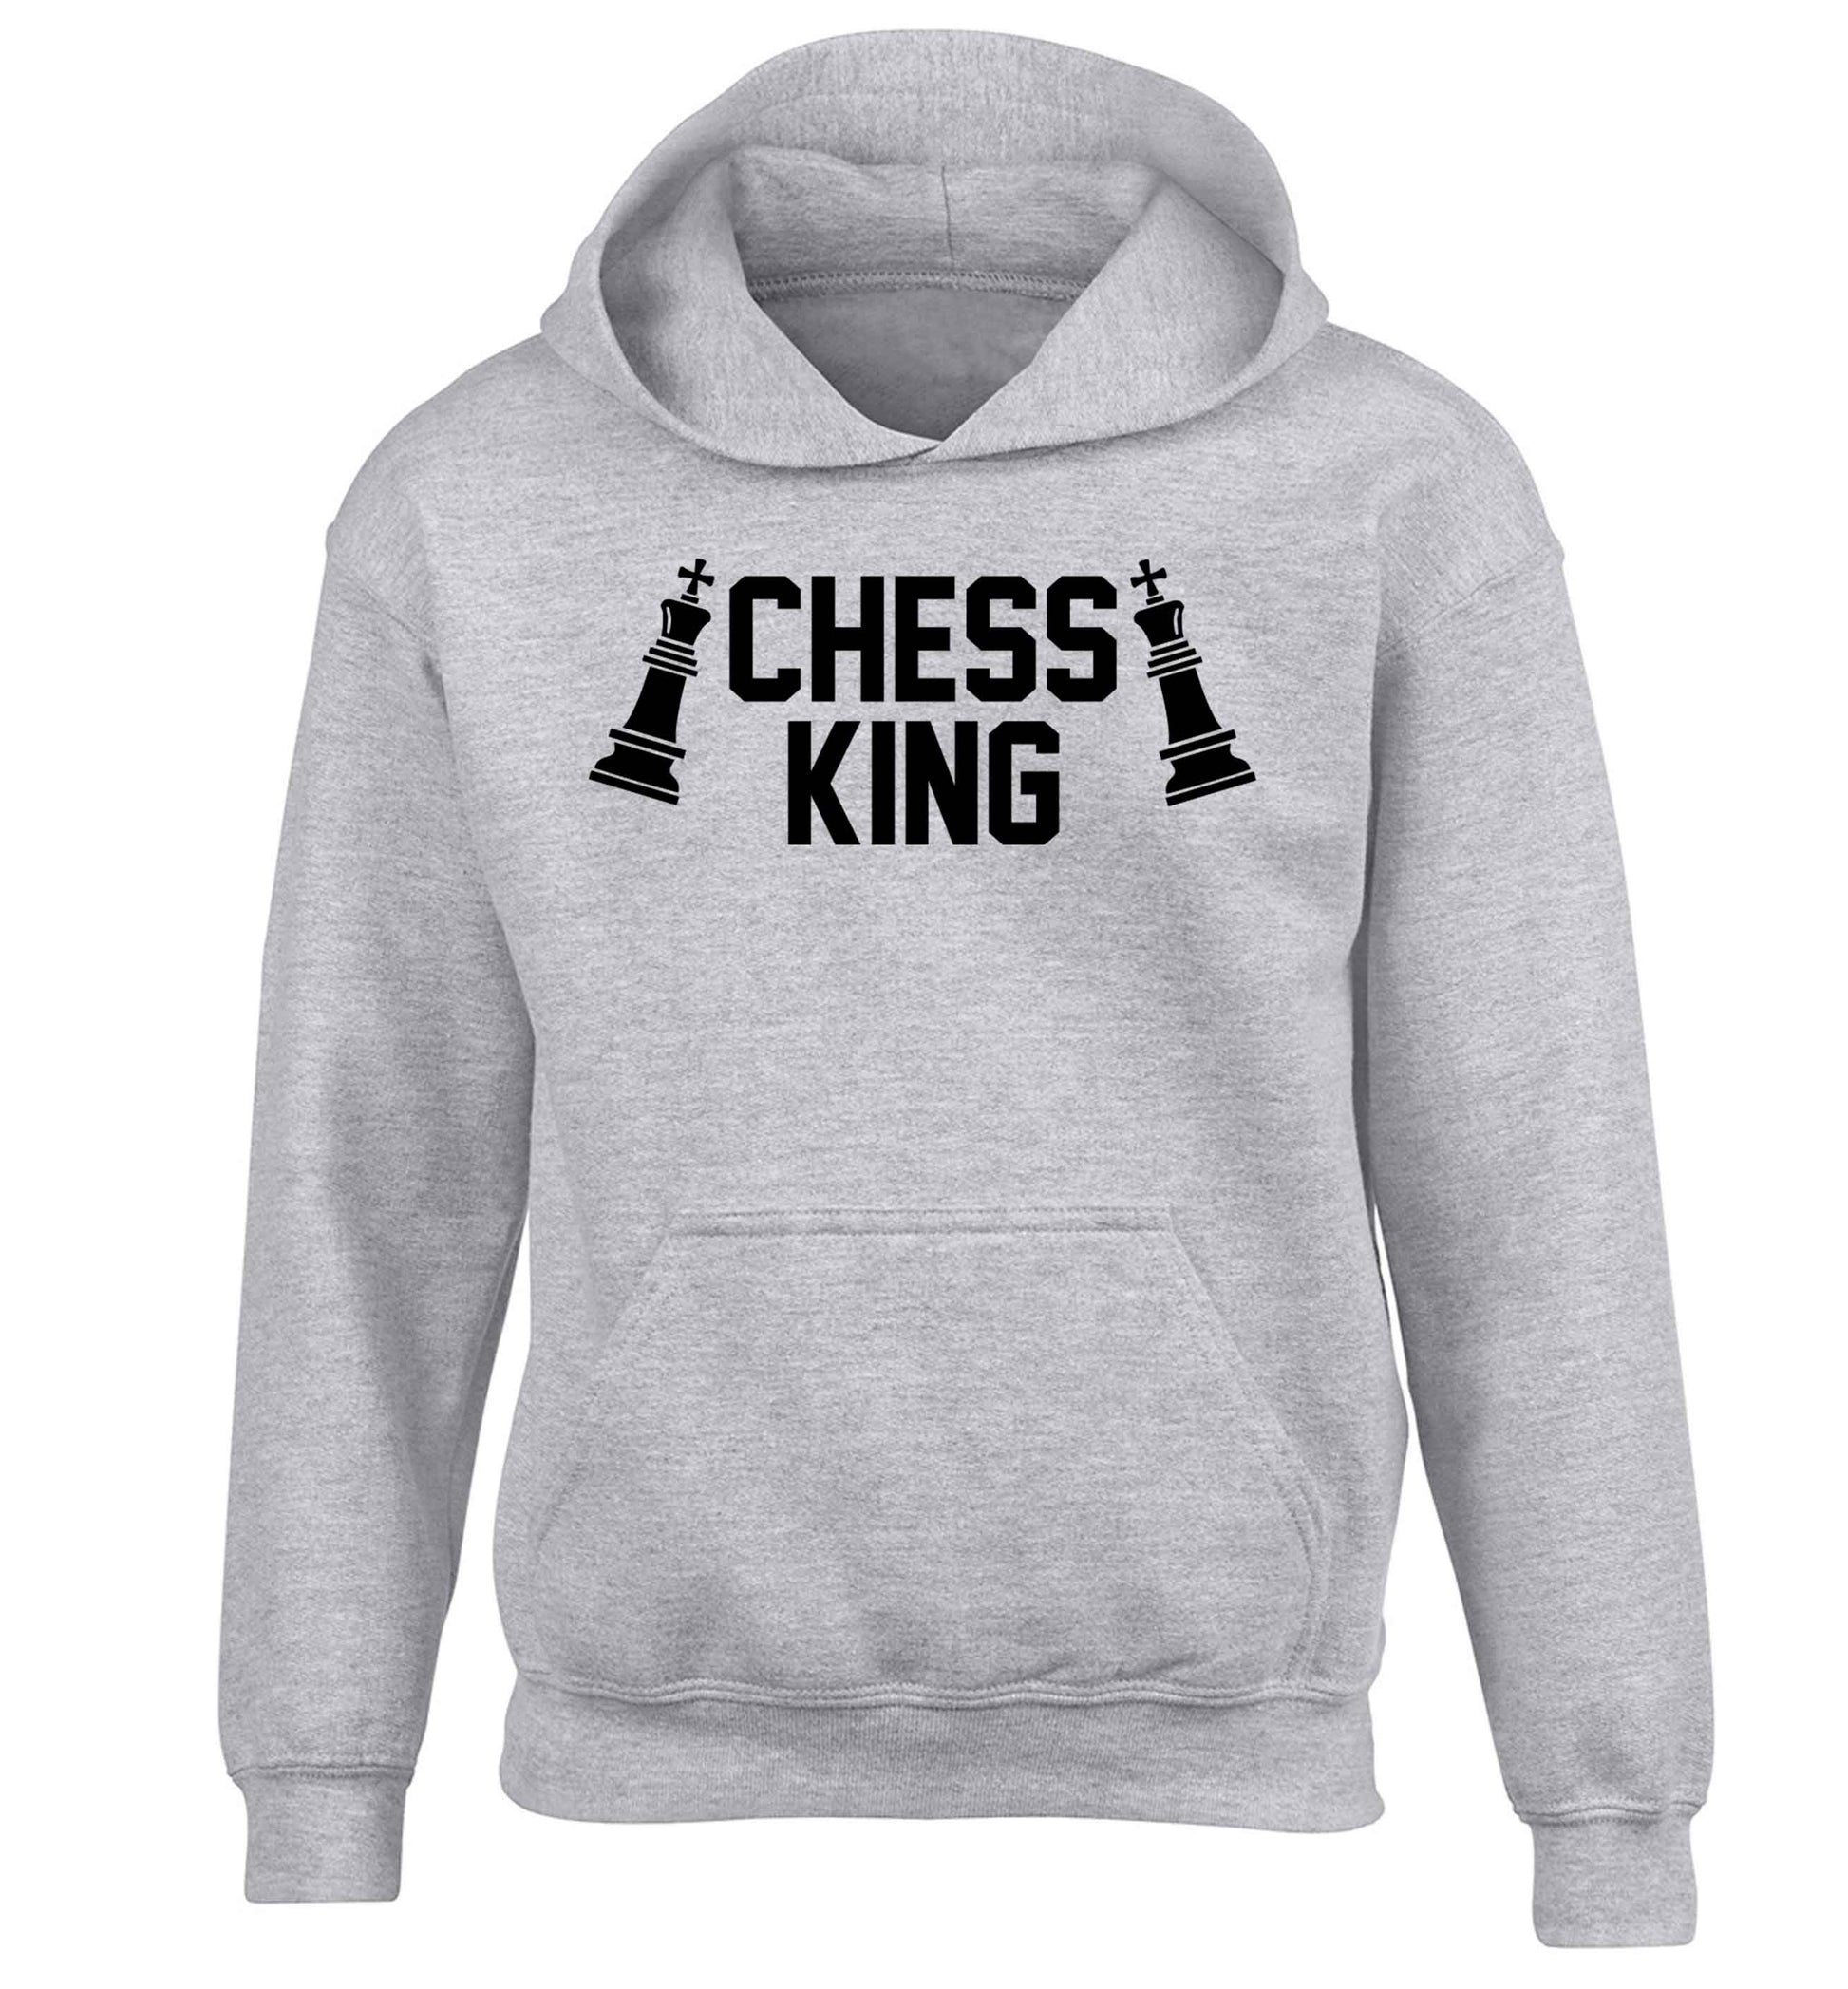 Chess king children's grey hoodie 12-13 Years